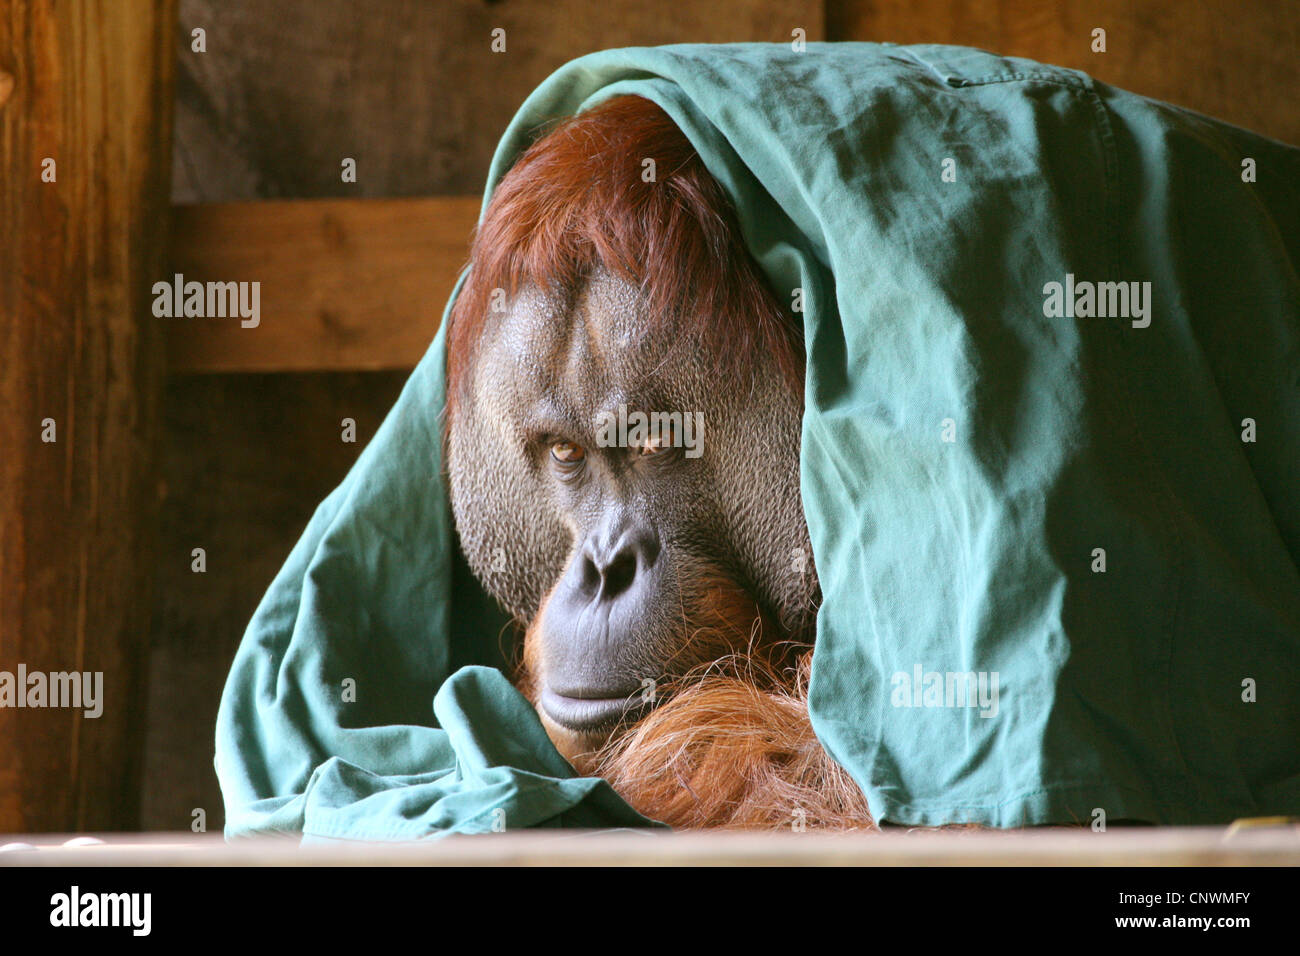 Orangután de Sumatra (Pongo pygmaeus abelii, pongo abelii), con el paño de trabajo de stockman impuestas sobre la cabeza Foto de stock